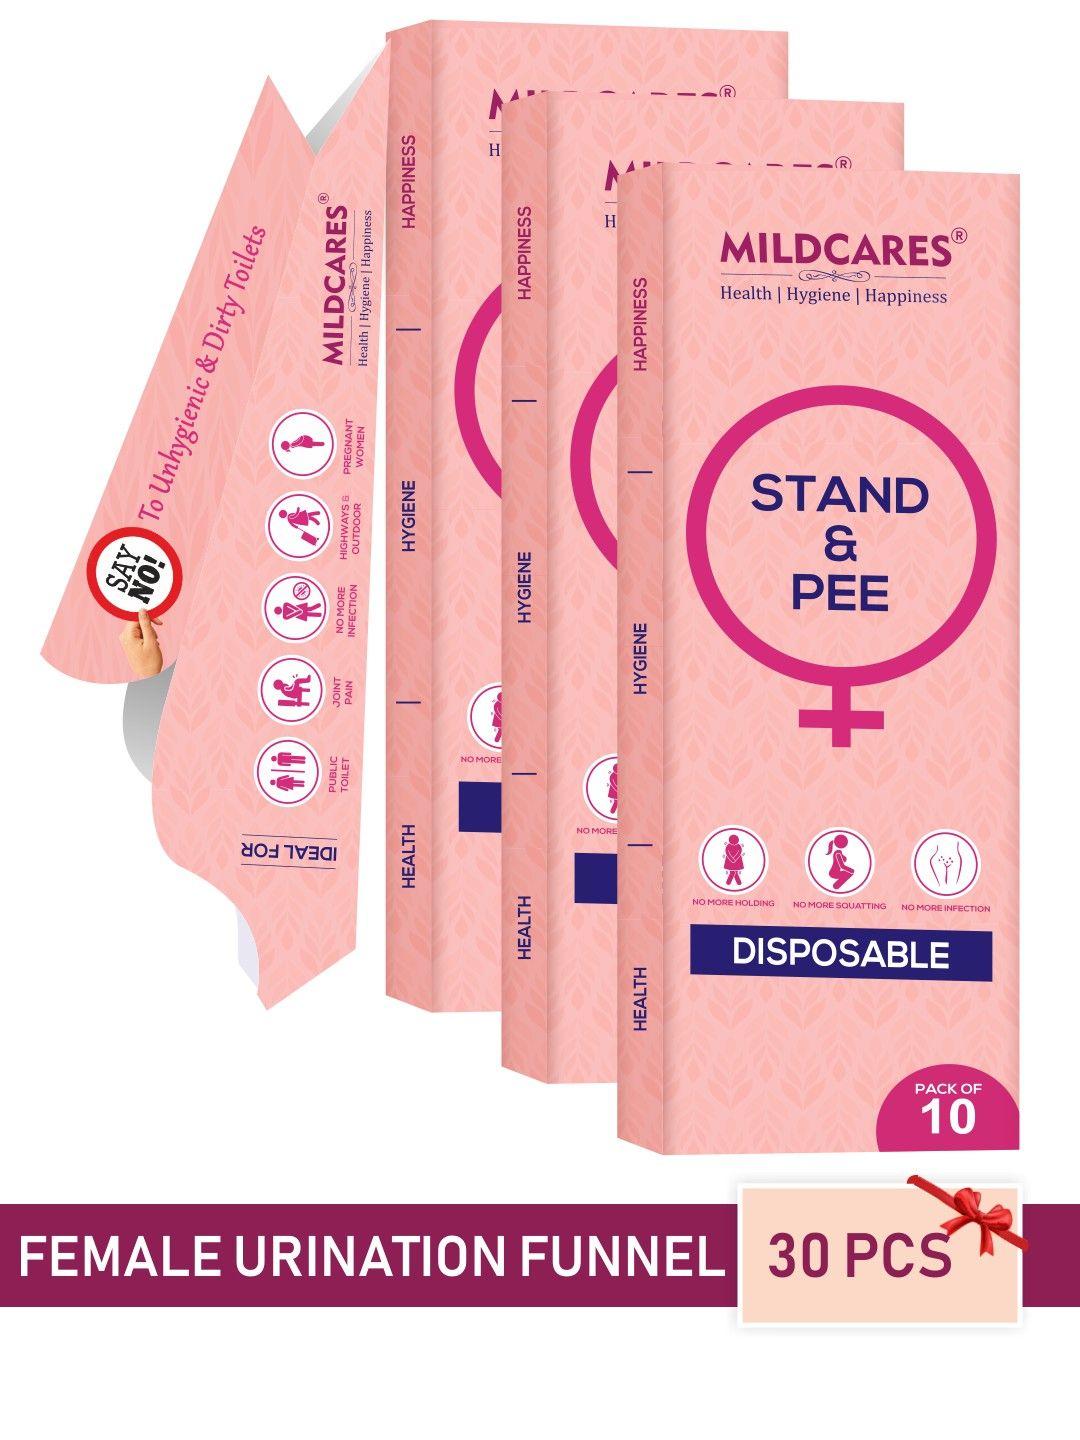 mildcares set of 3 women portable & leak-proof disposable female urination device - 30 pcs